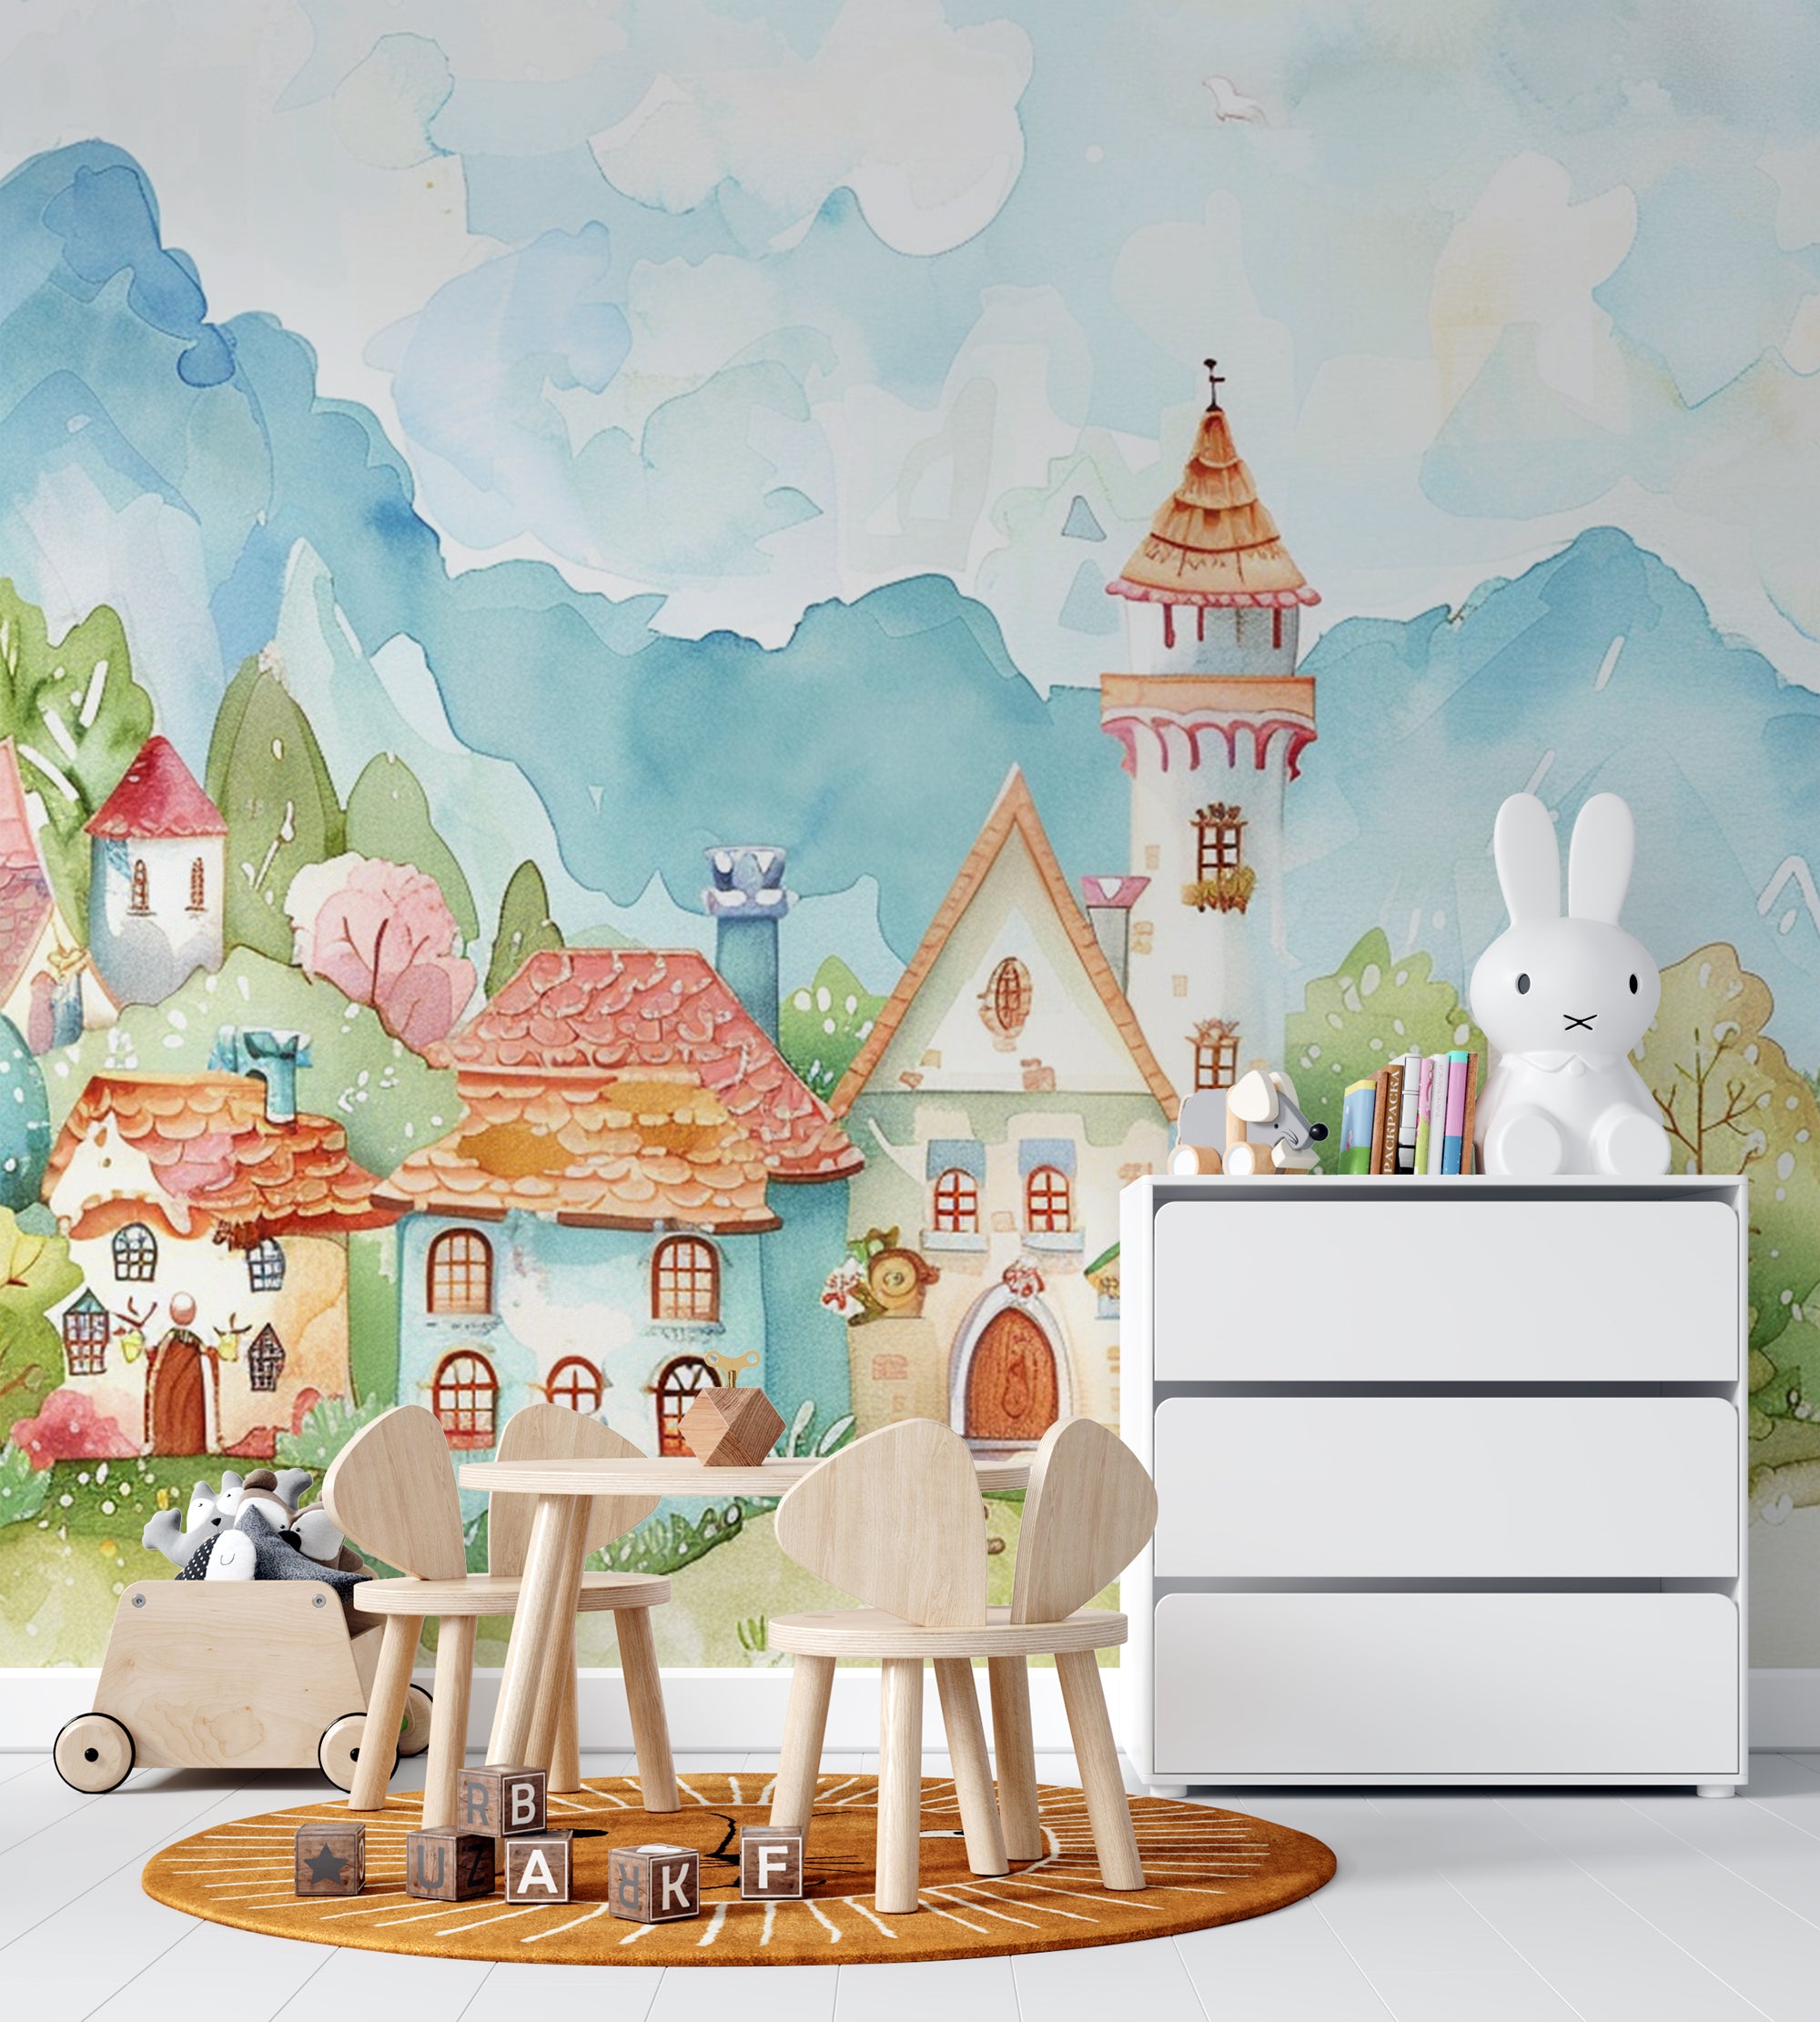 Imaginary Escape: Fantasy Village Wallpaper for Children